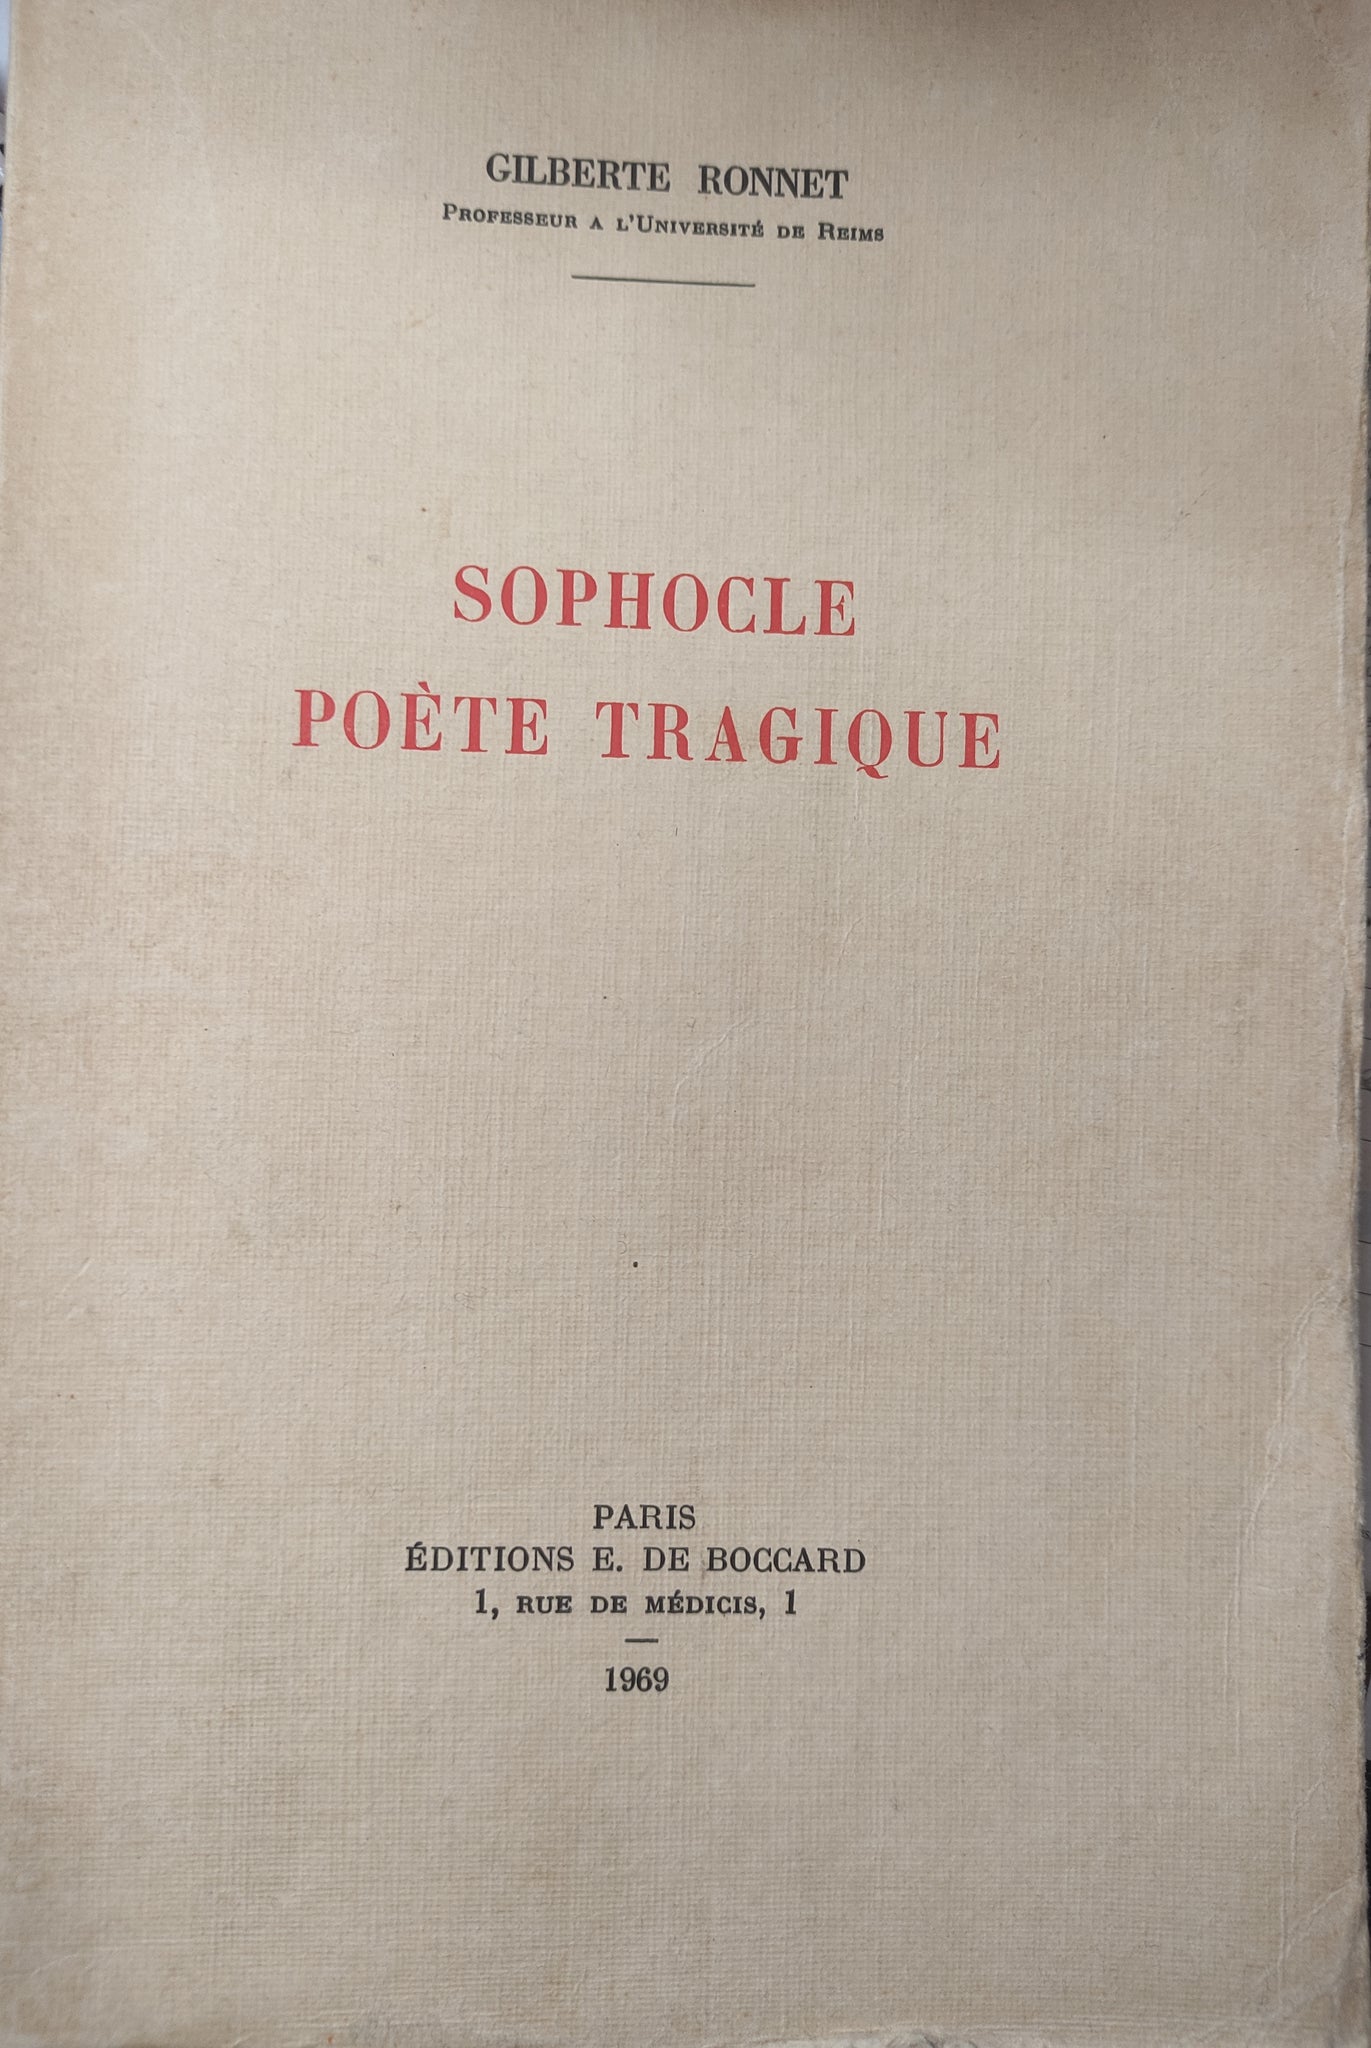 Sophocle: Poète tragique.